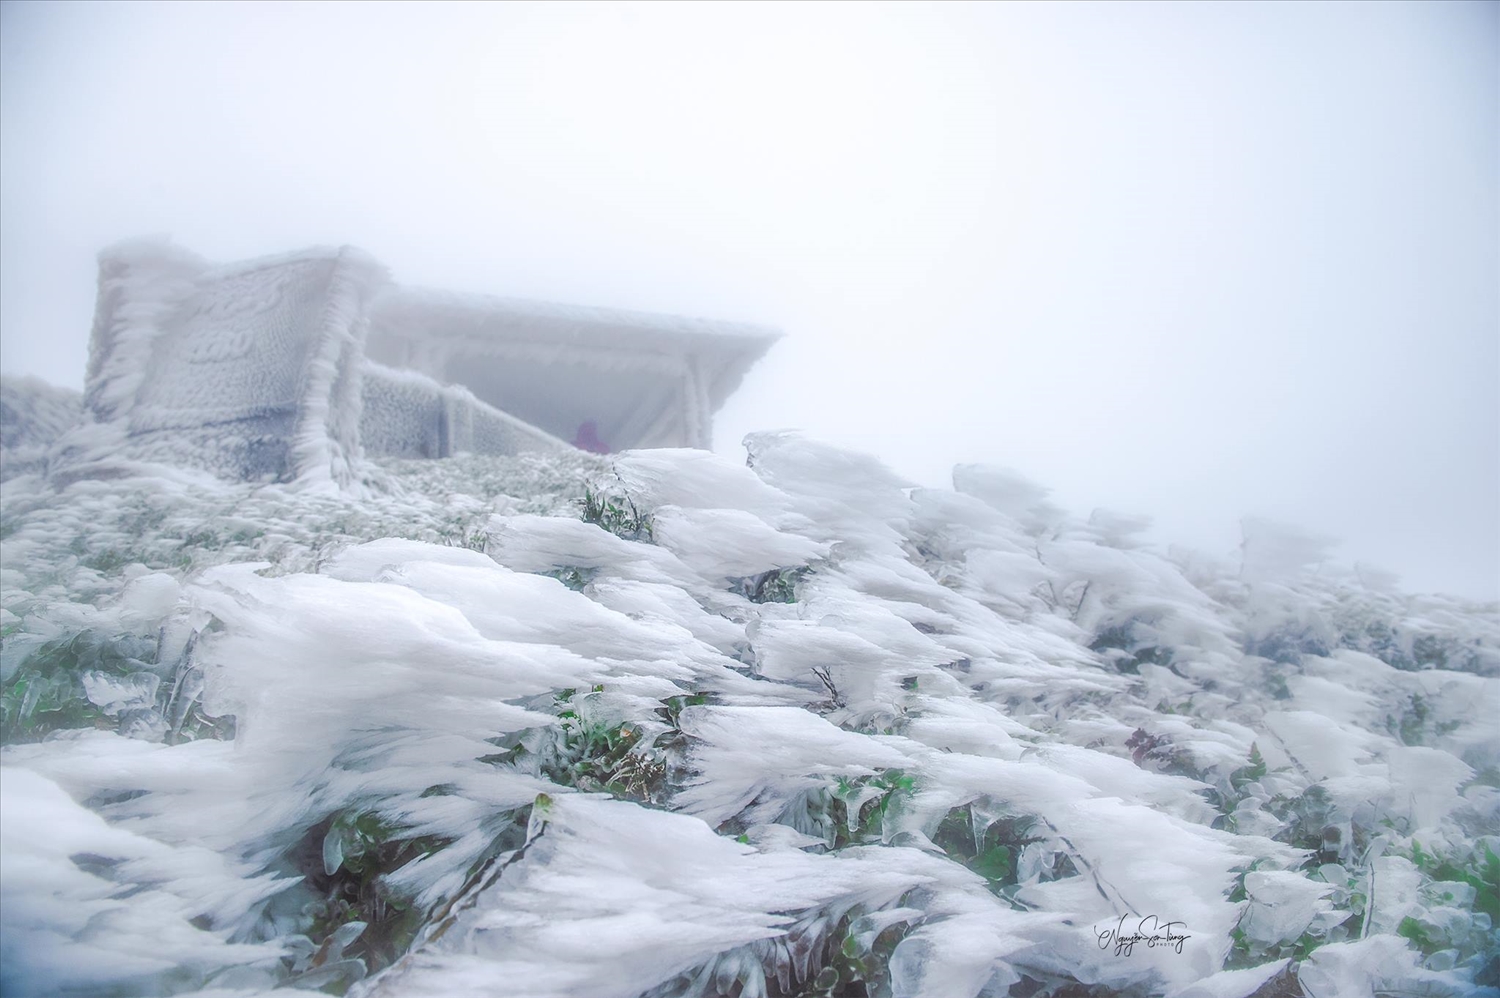 Khi nhiệt độ xuống dưới 0 độ C, trên đỉnh núi Mẫu Sơn tuyết phủ trắng xóa 